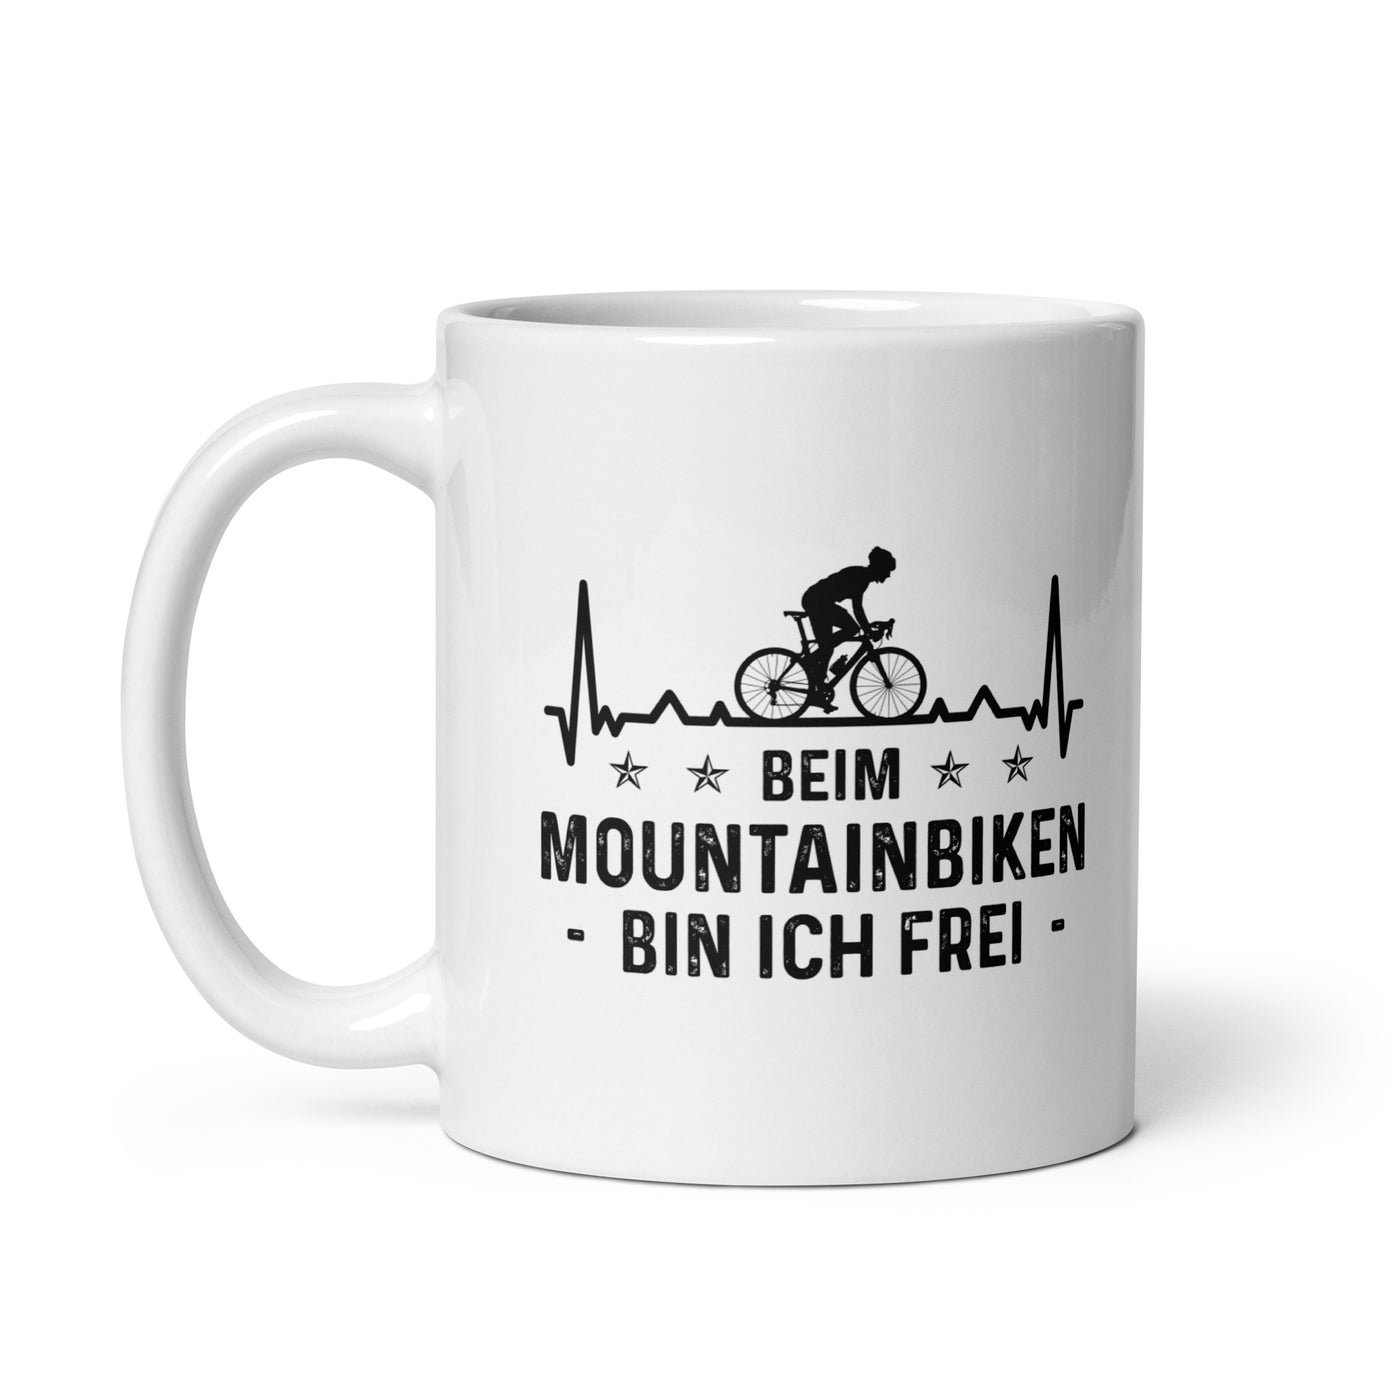 Beim Mountainbiken Bin Ich Frei 3 - Tasse fahrrad 11oz